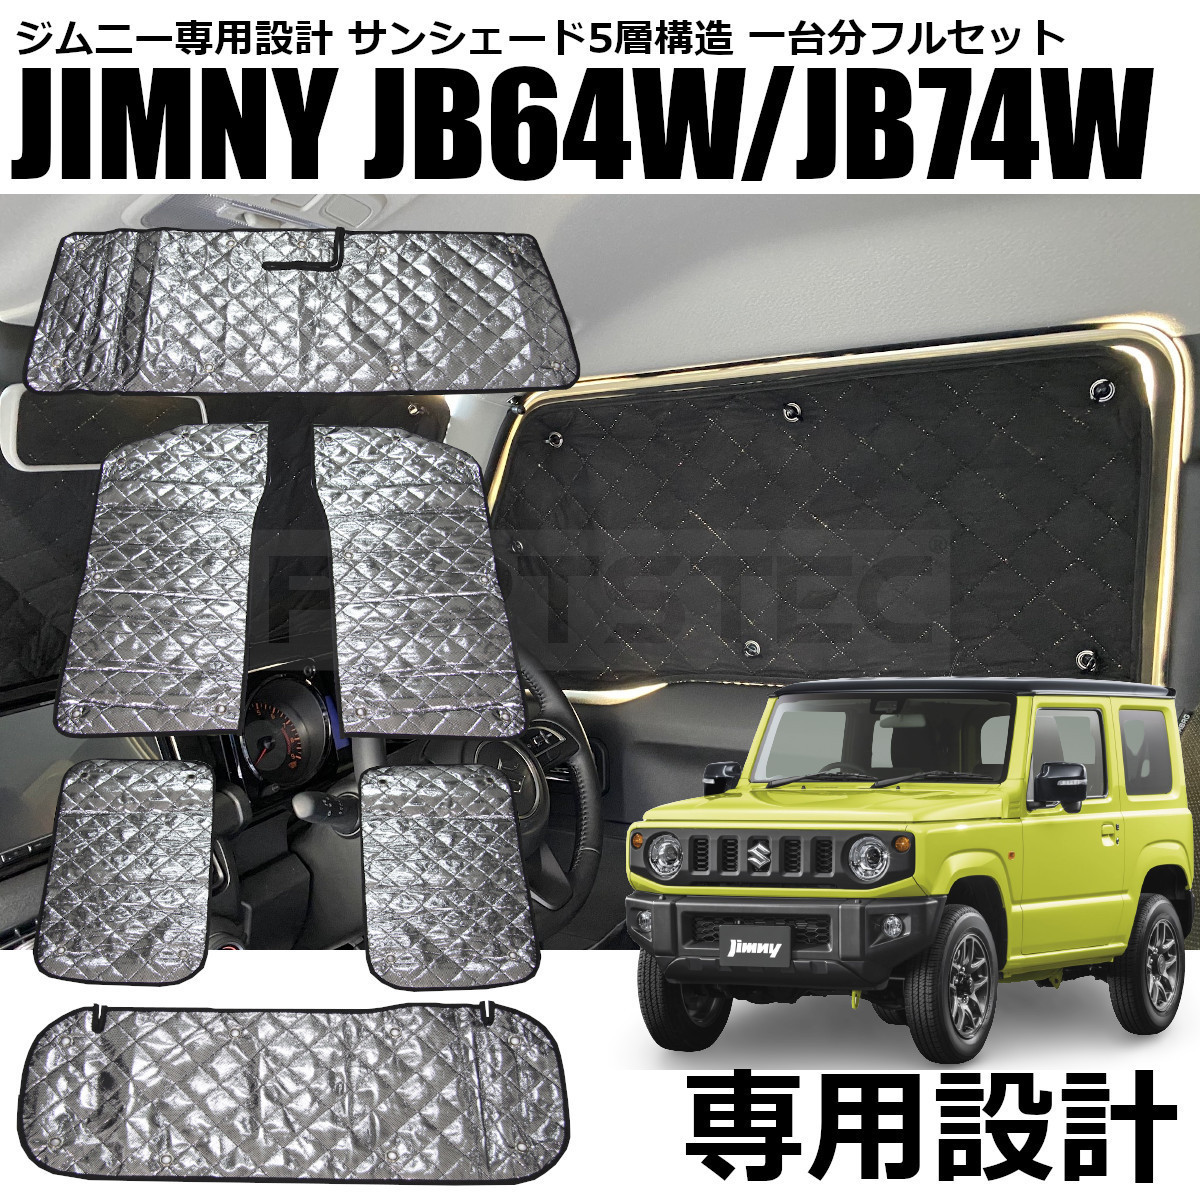 ジムニー JB64W シエラ JB74W サンシェード 5層構造 6点セット 1台分 フロント リア ブラックメッシュ 日本製 吸盤 アウトドア/28-391 O-5_画像1